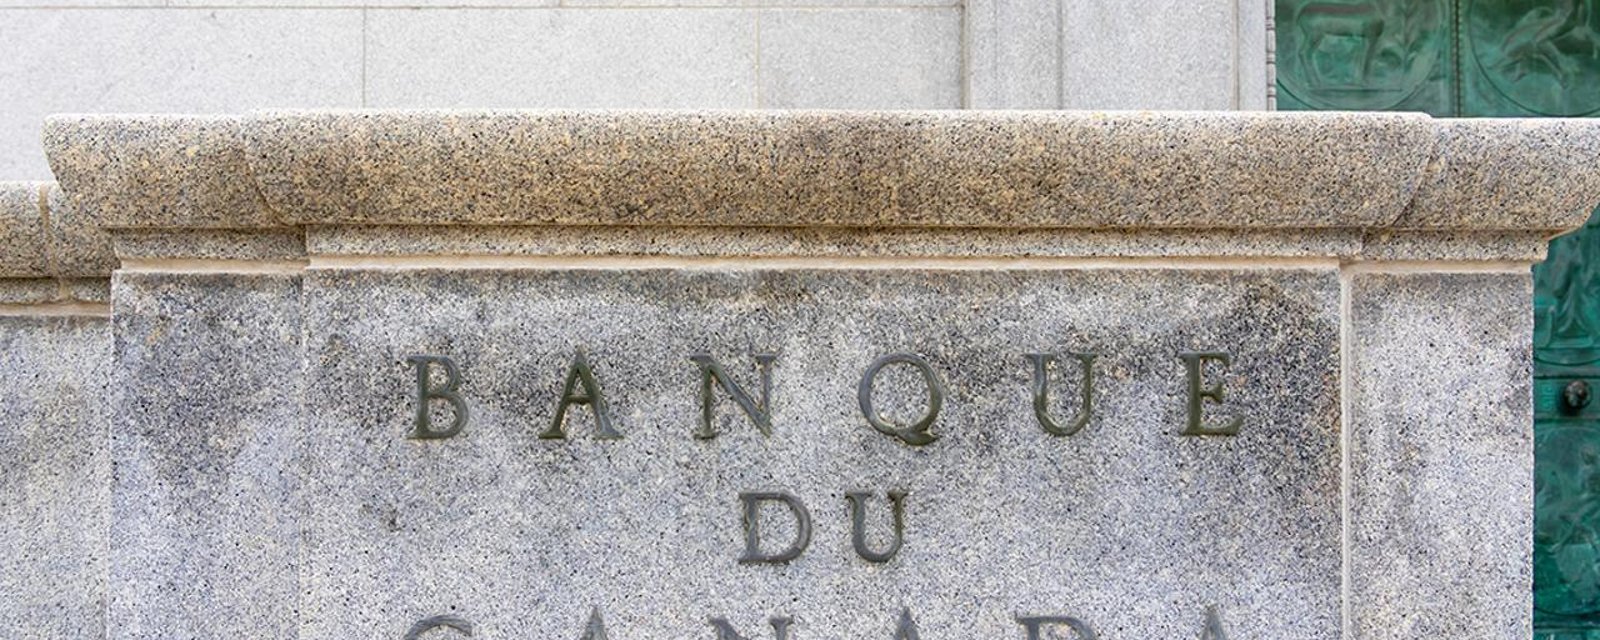 La Banque du Canada vient de dévoiler sa décision concernant le taux directeur